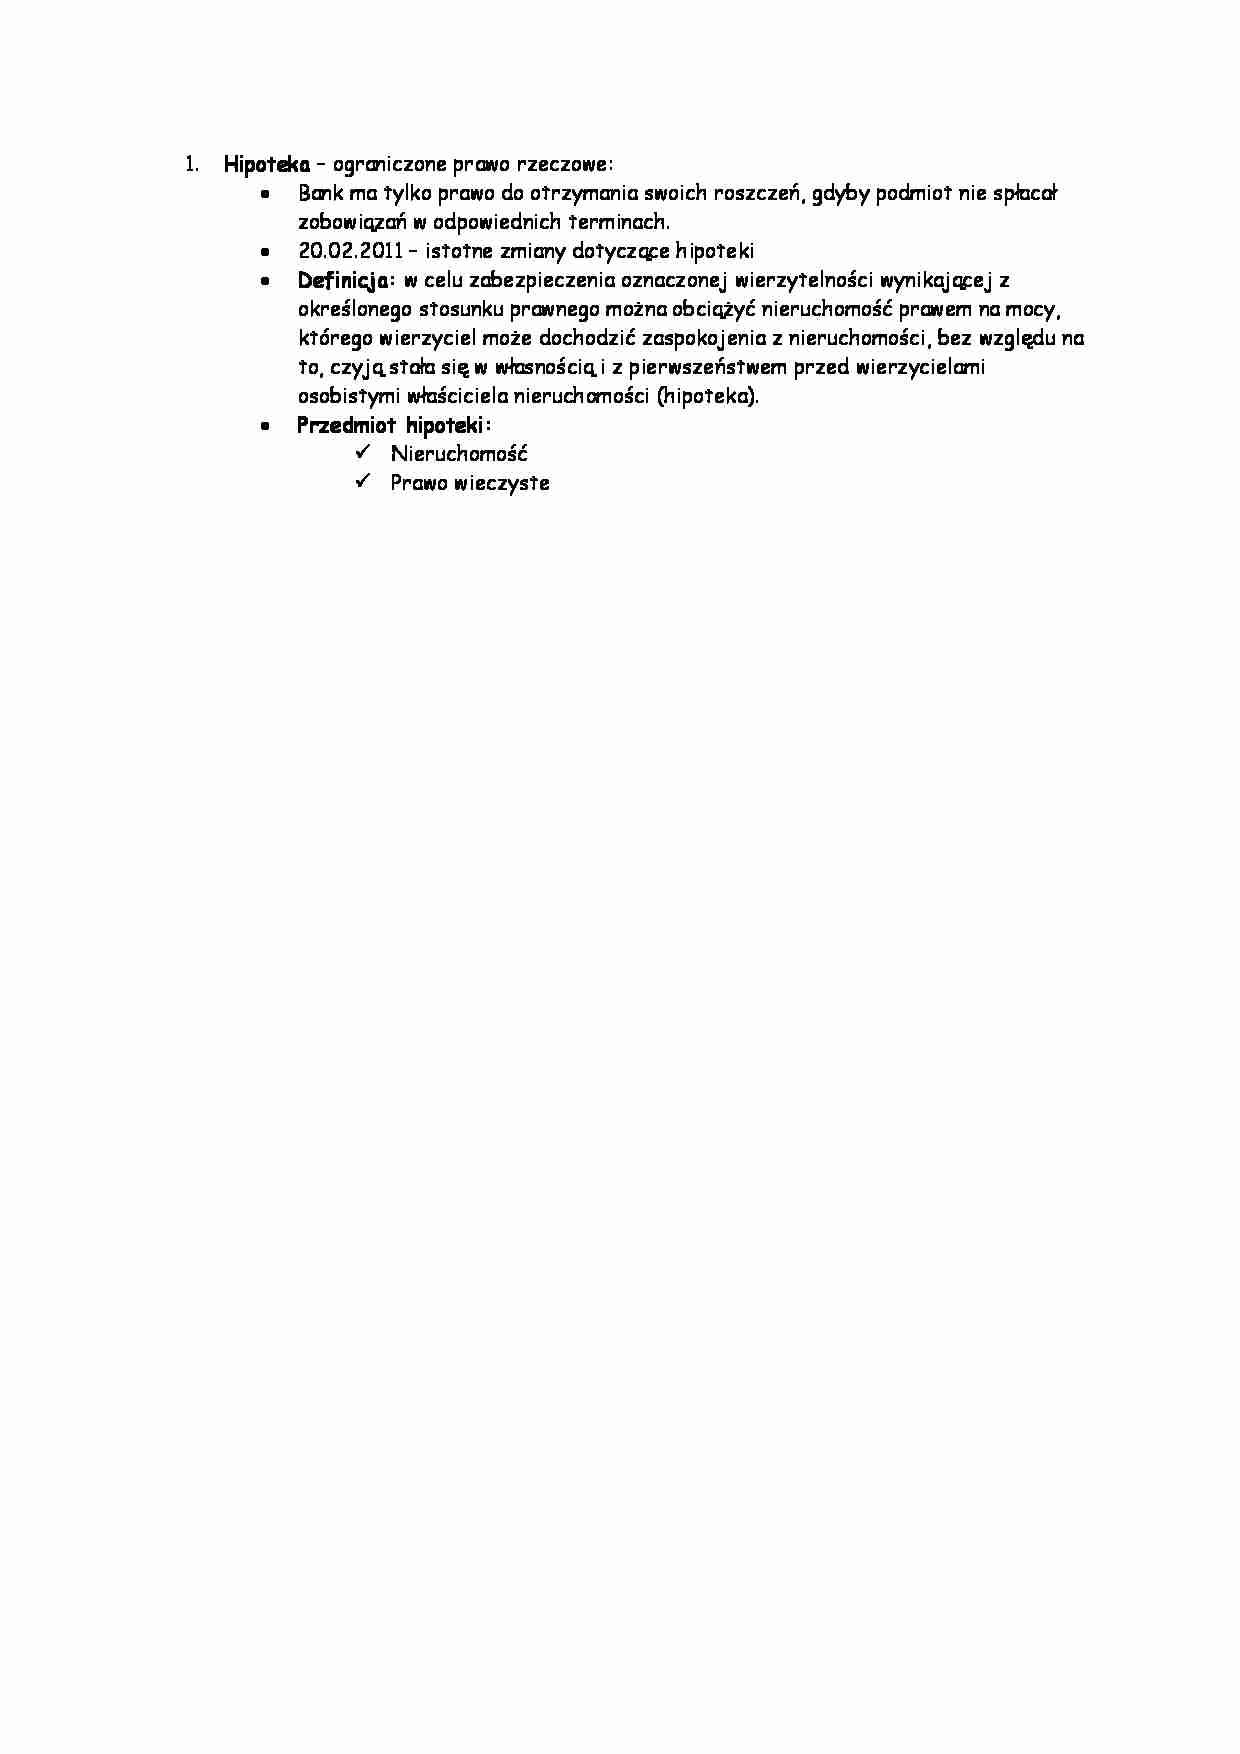 Hipoteka - definicja i przedmiot - strona 1